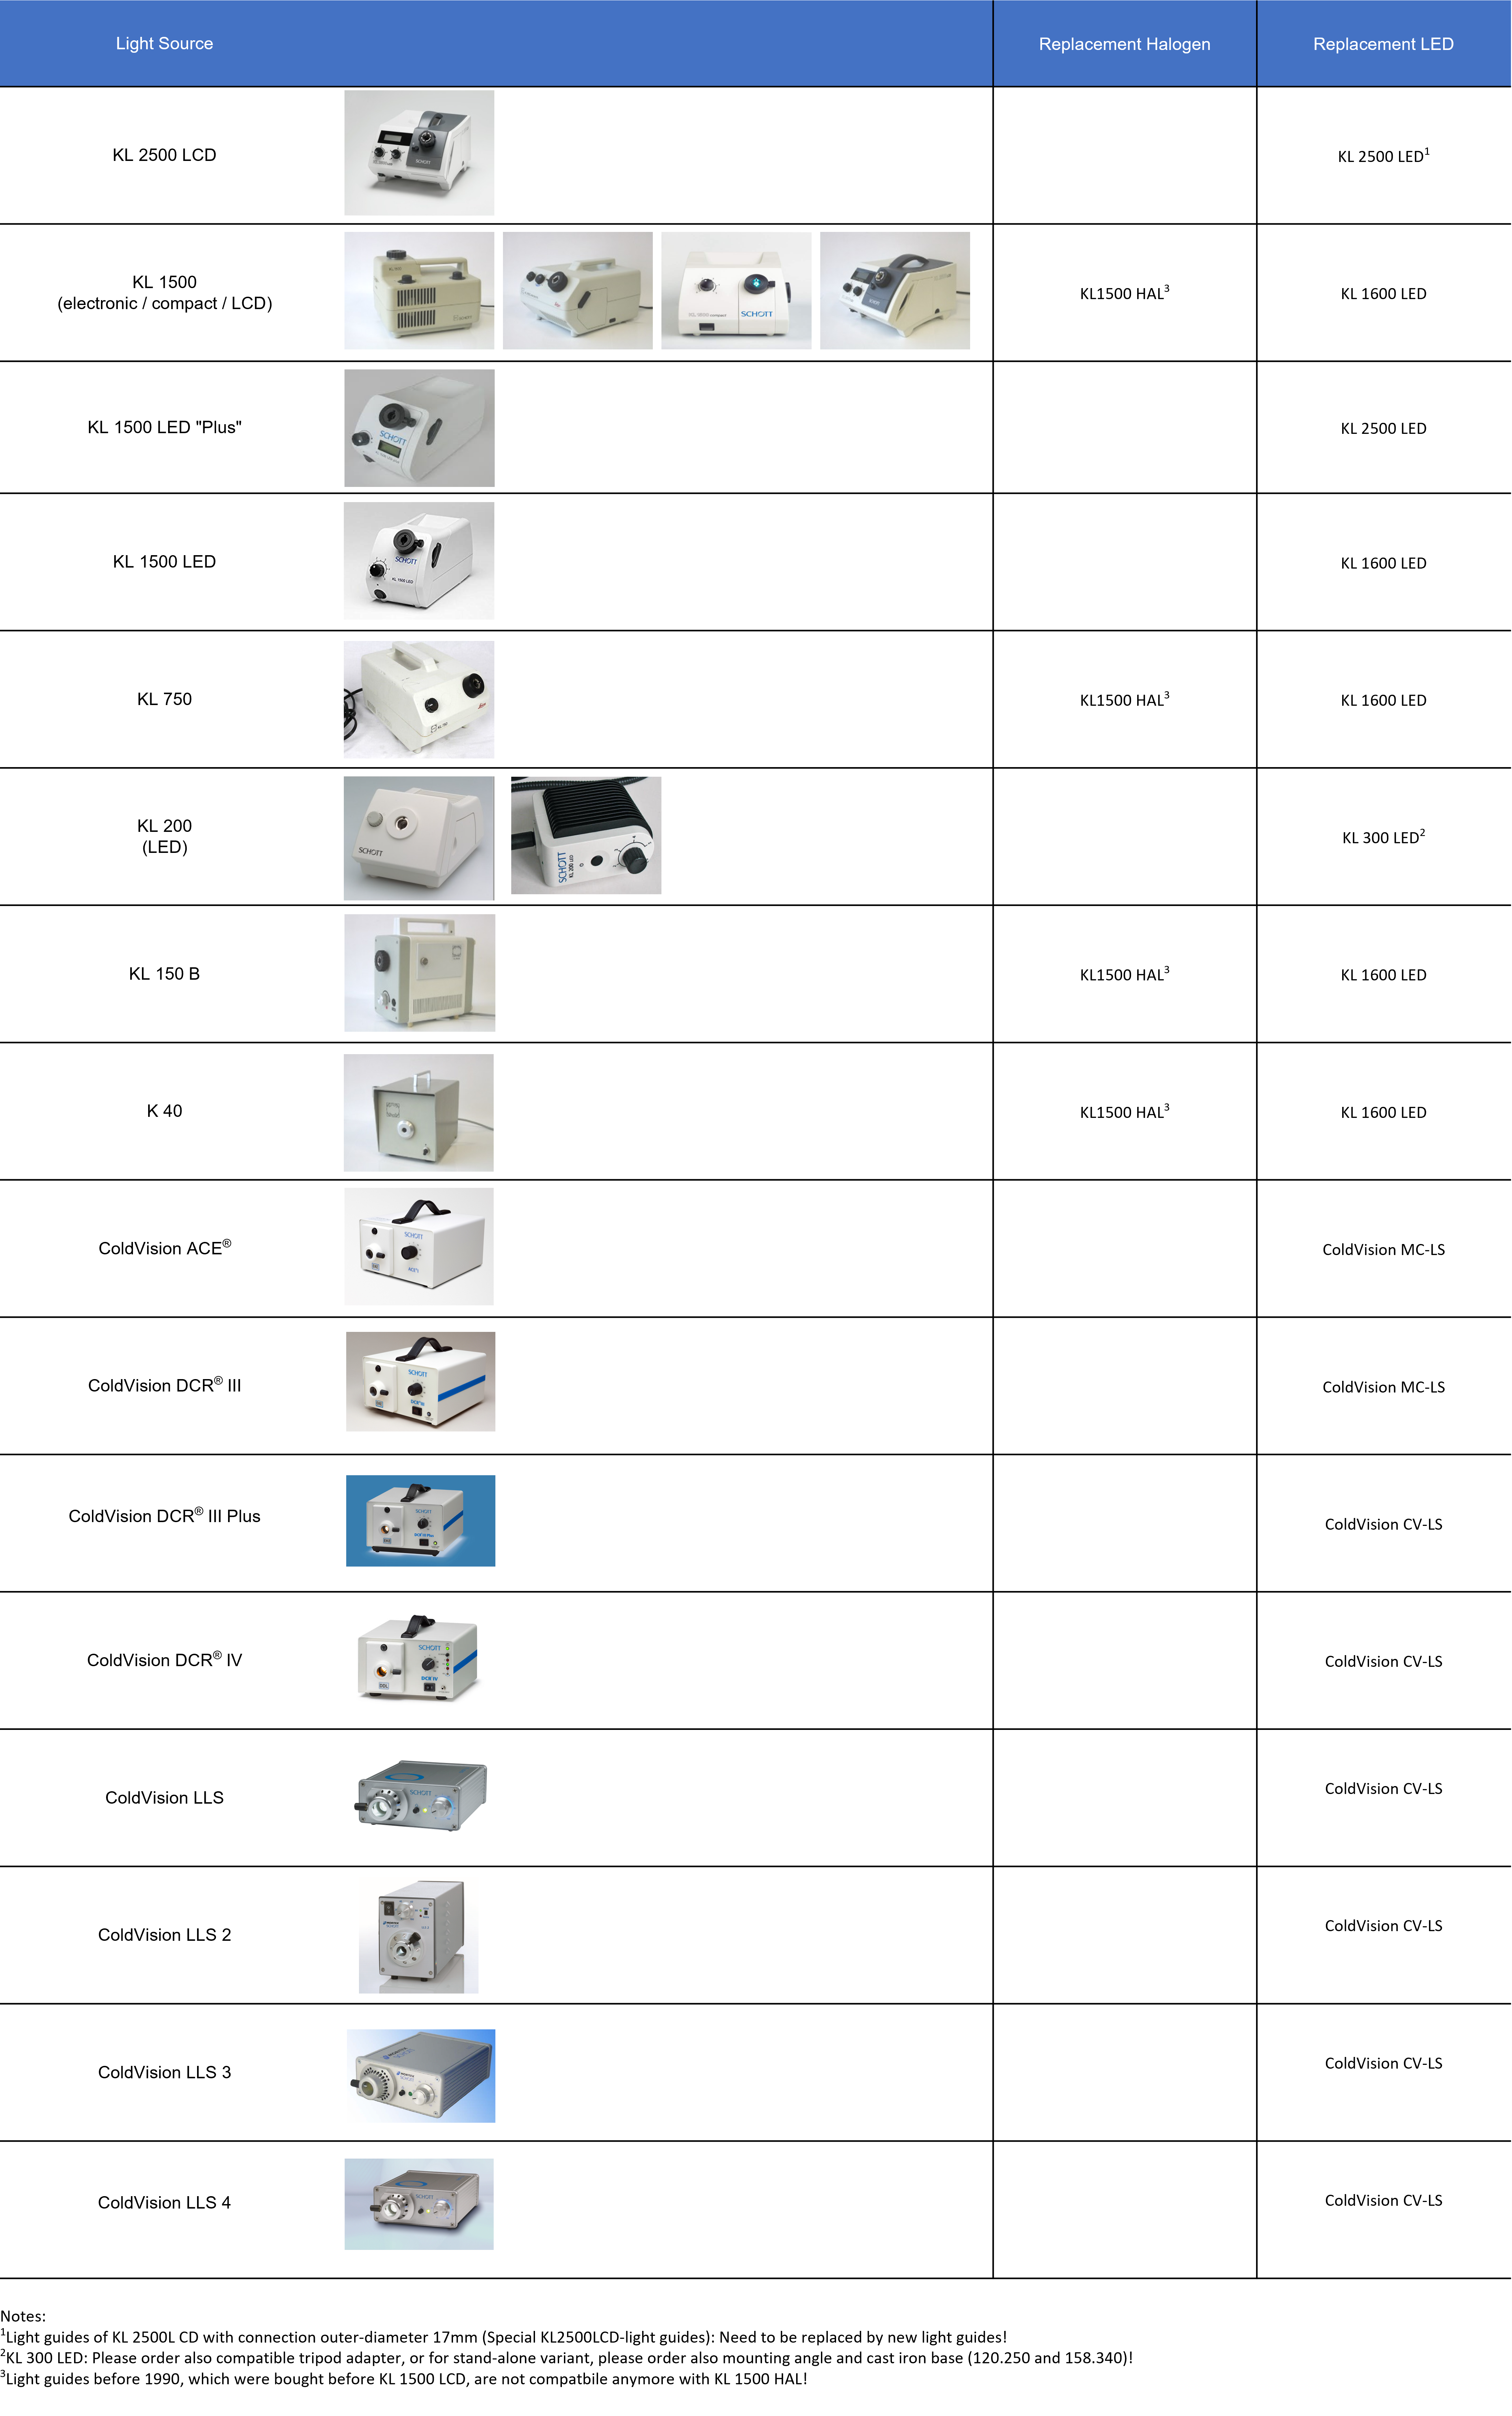 Tabela com especificações da linha de fontes de luz da SCHOTT